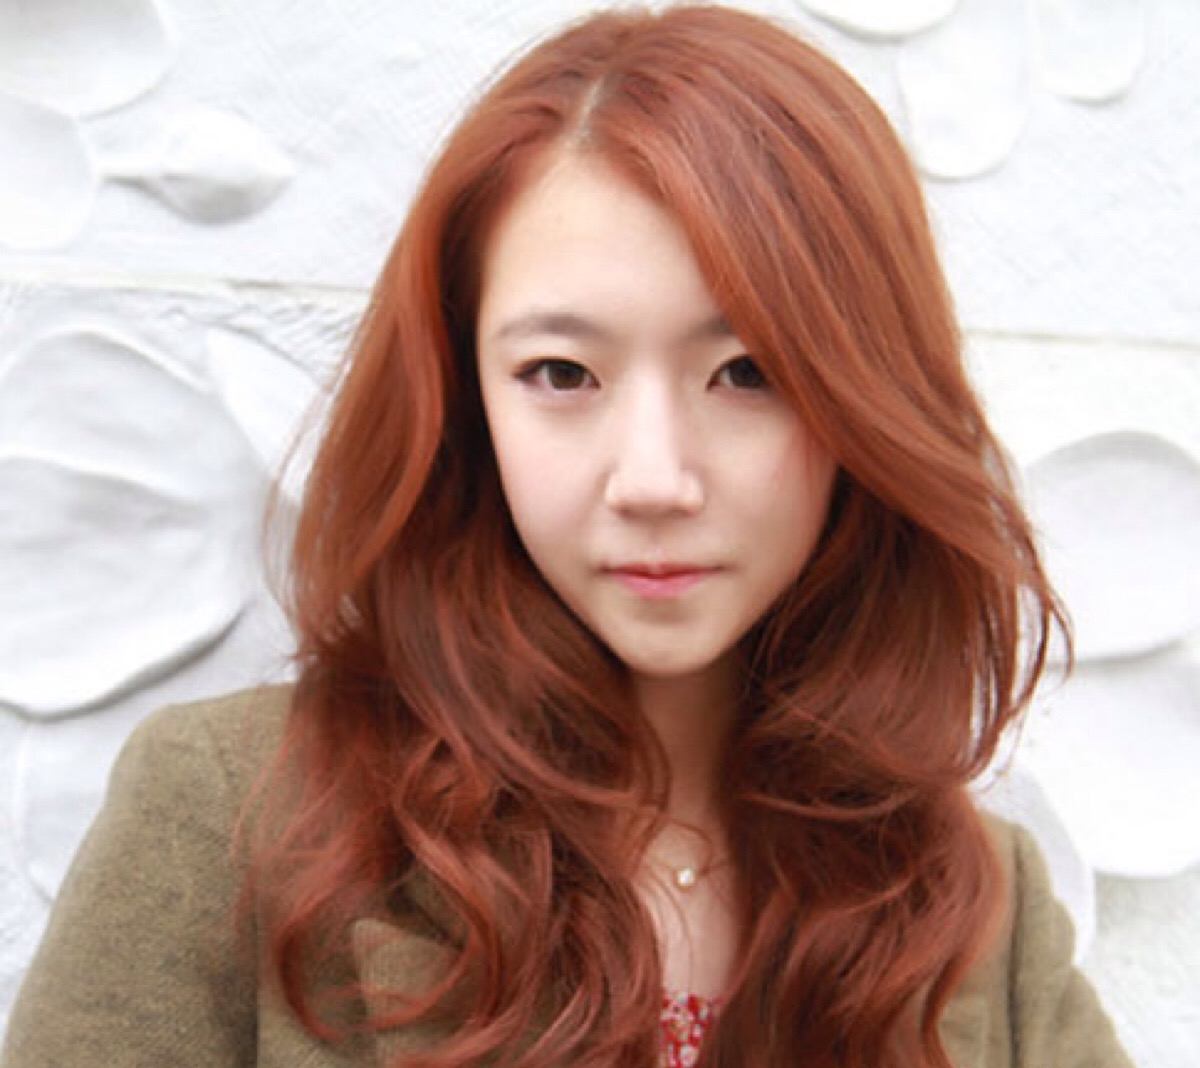 韩式的斜分刘海加上棕色卷长发显得俏皮可爱,披肩的卷发不仅修脸,而且